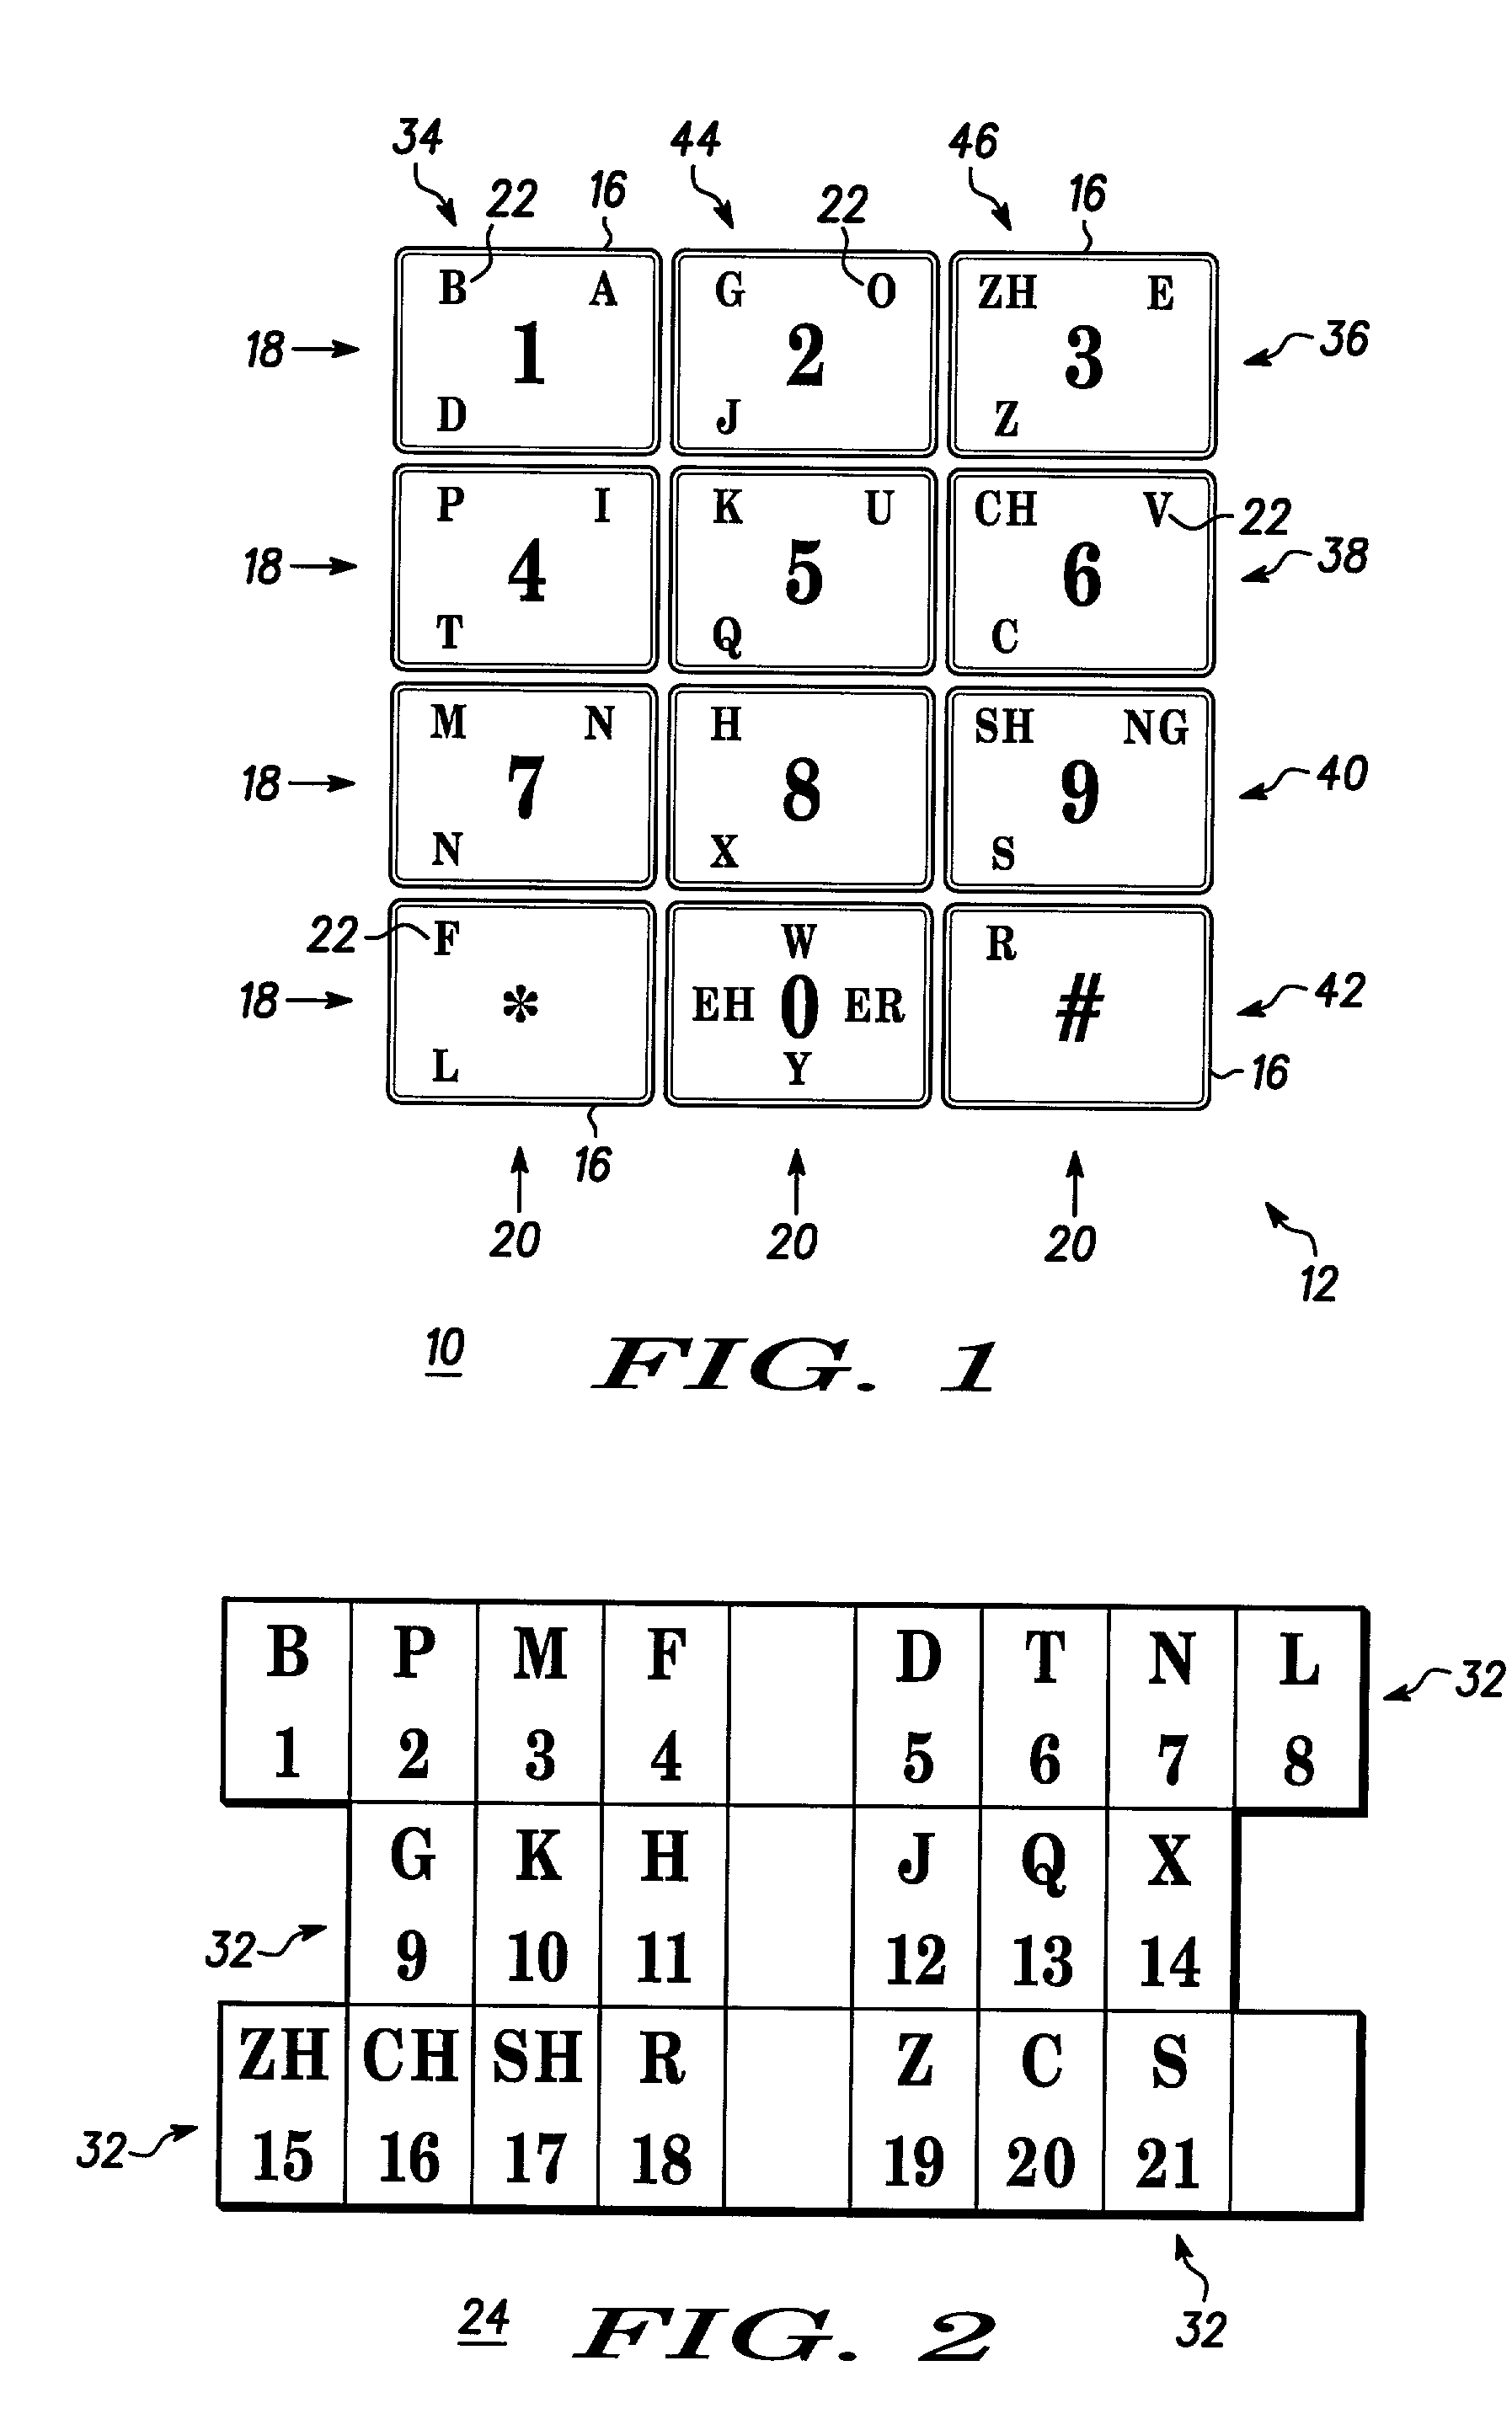 Keypad layout for alphabetic symbol input